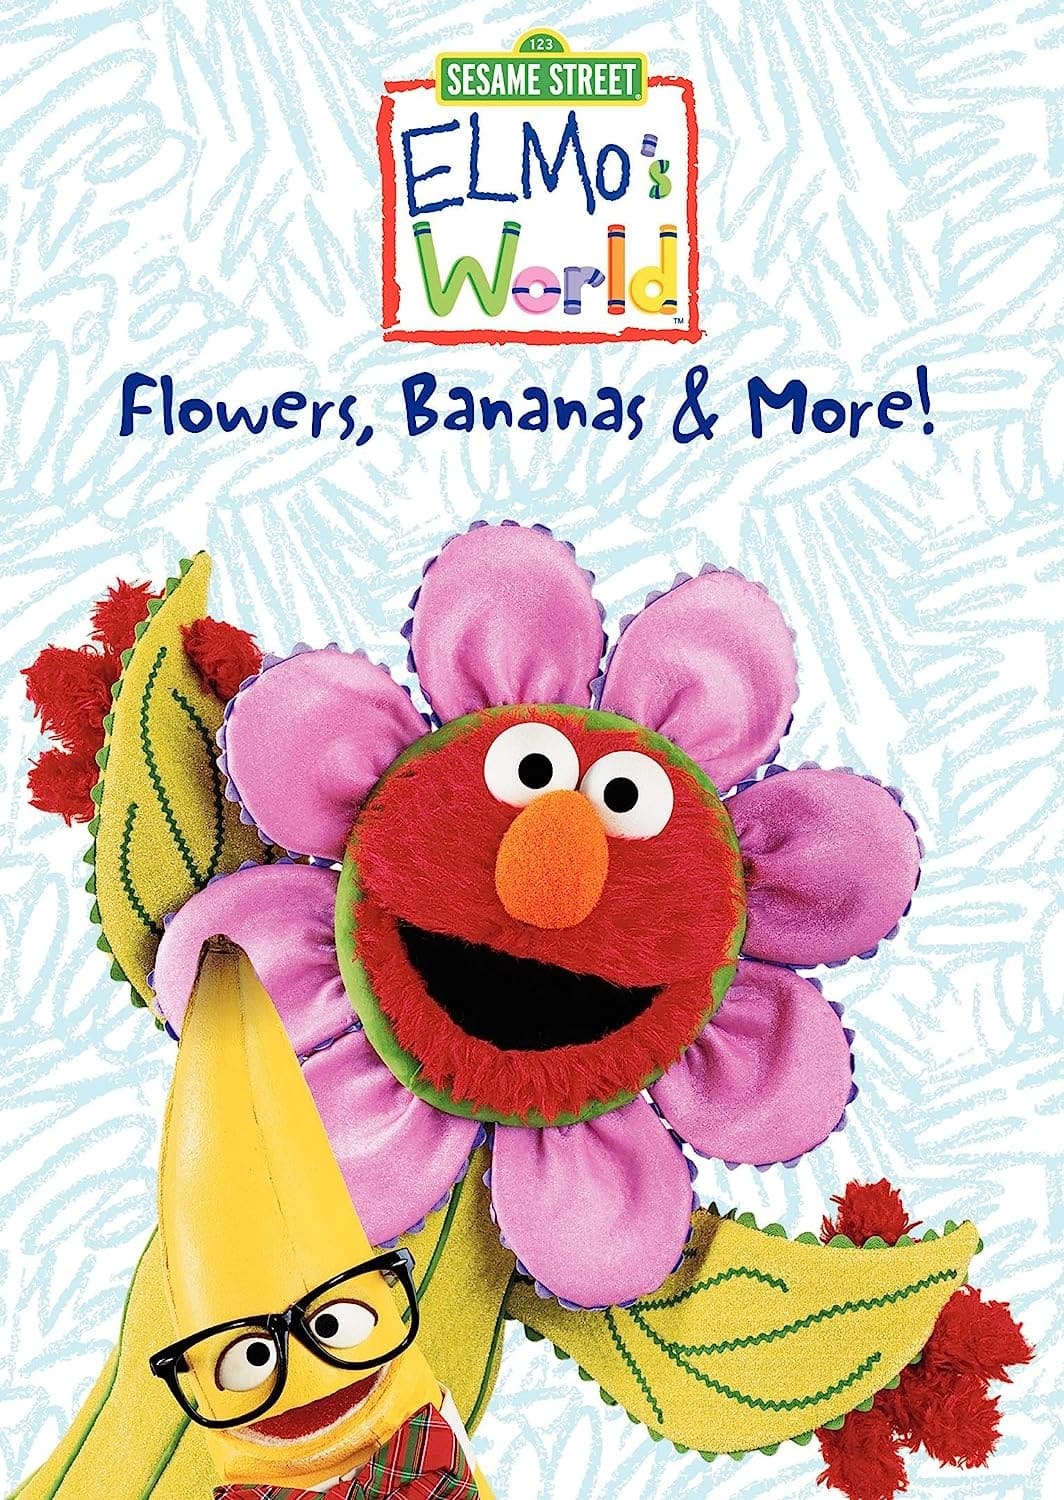 Sesame Street: Elmo's World: Flowers, Bananas & More!